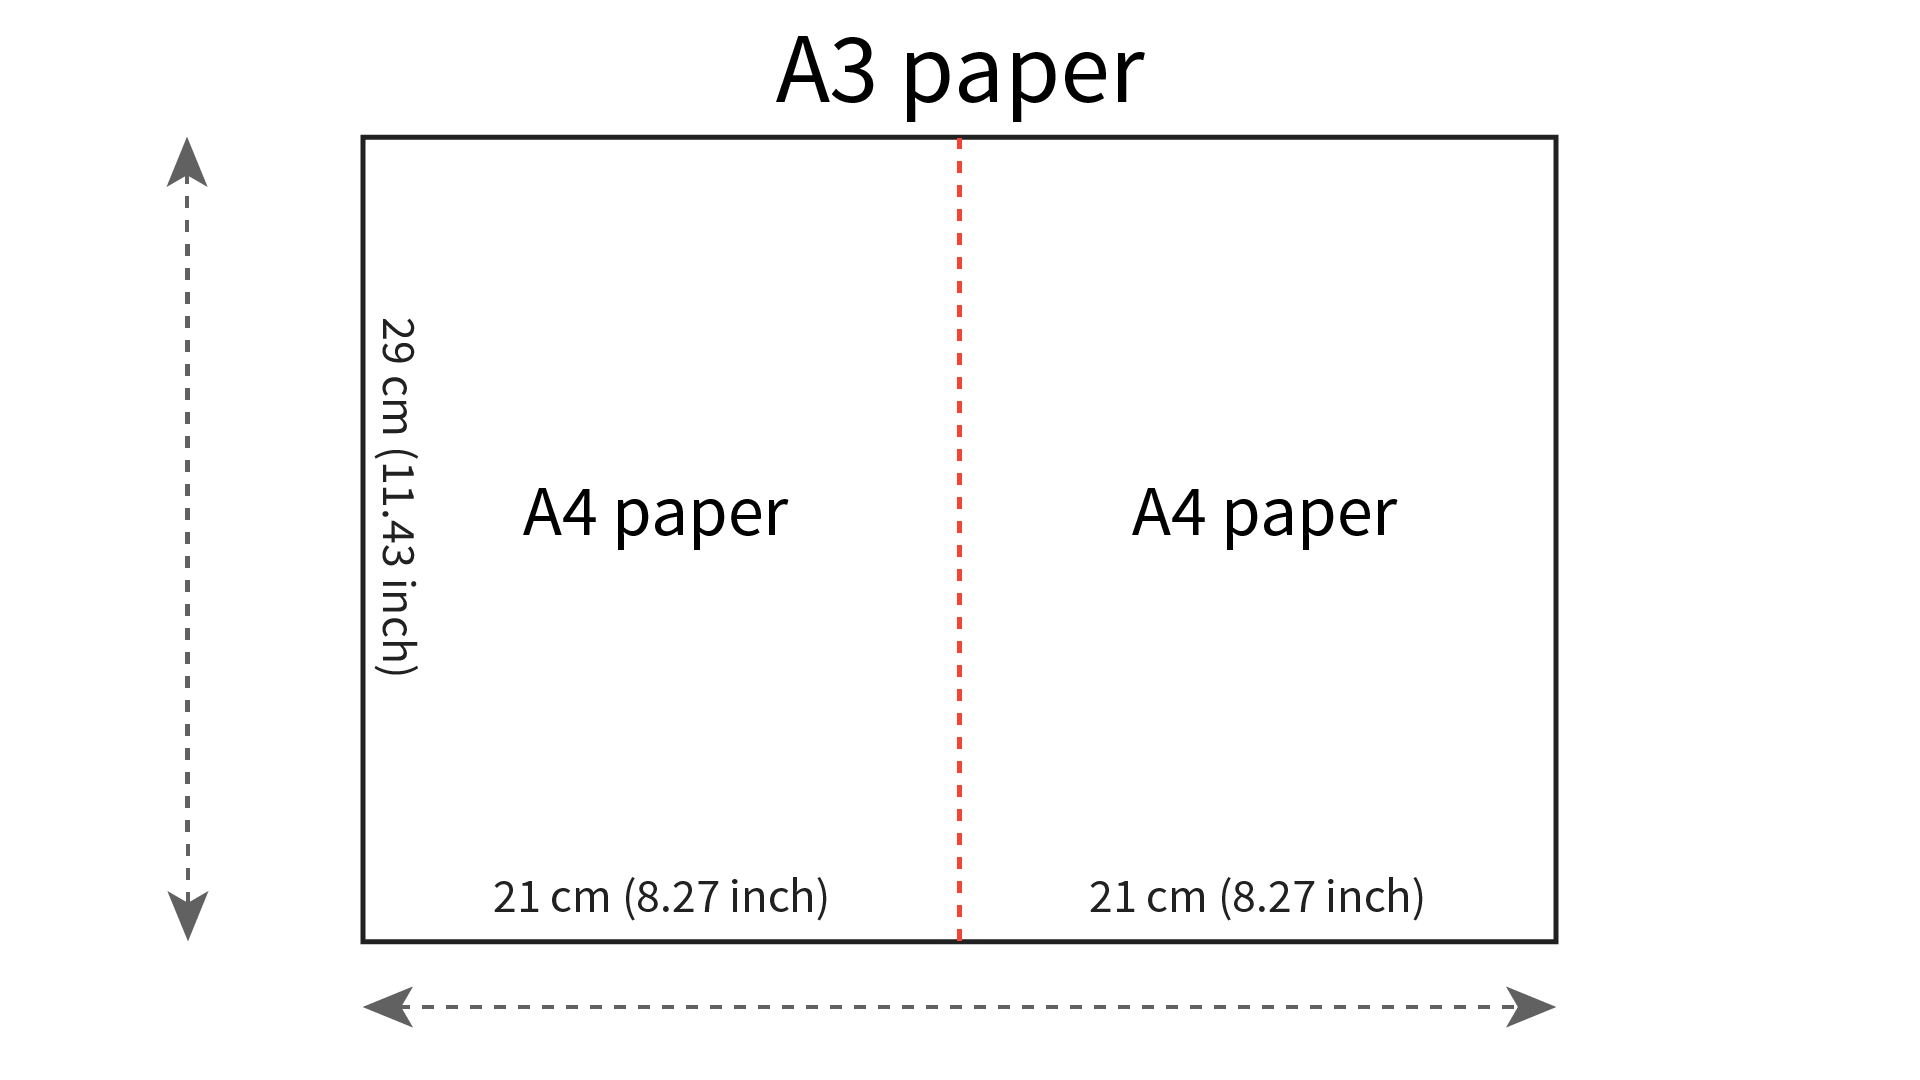 is a3 paper bigger than a4